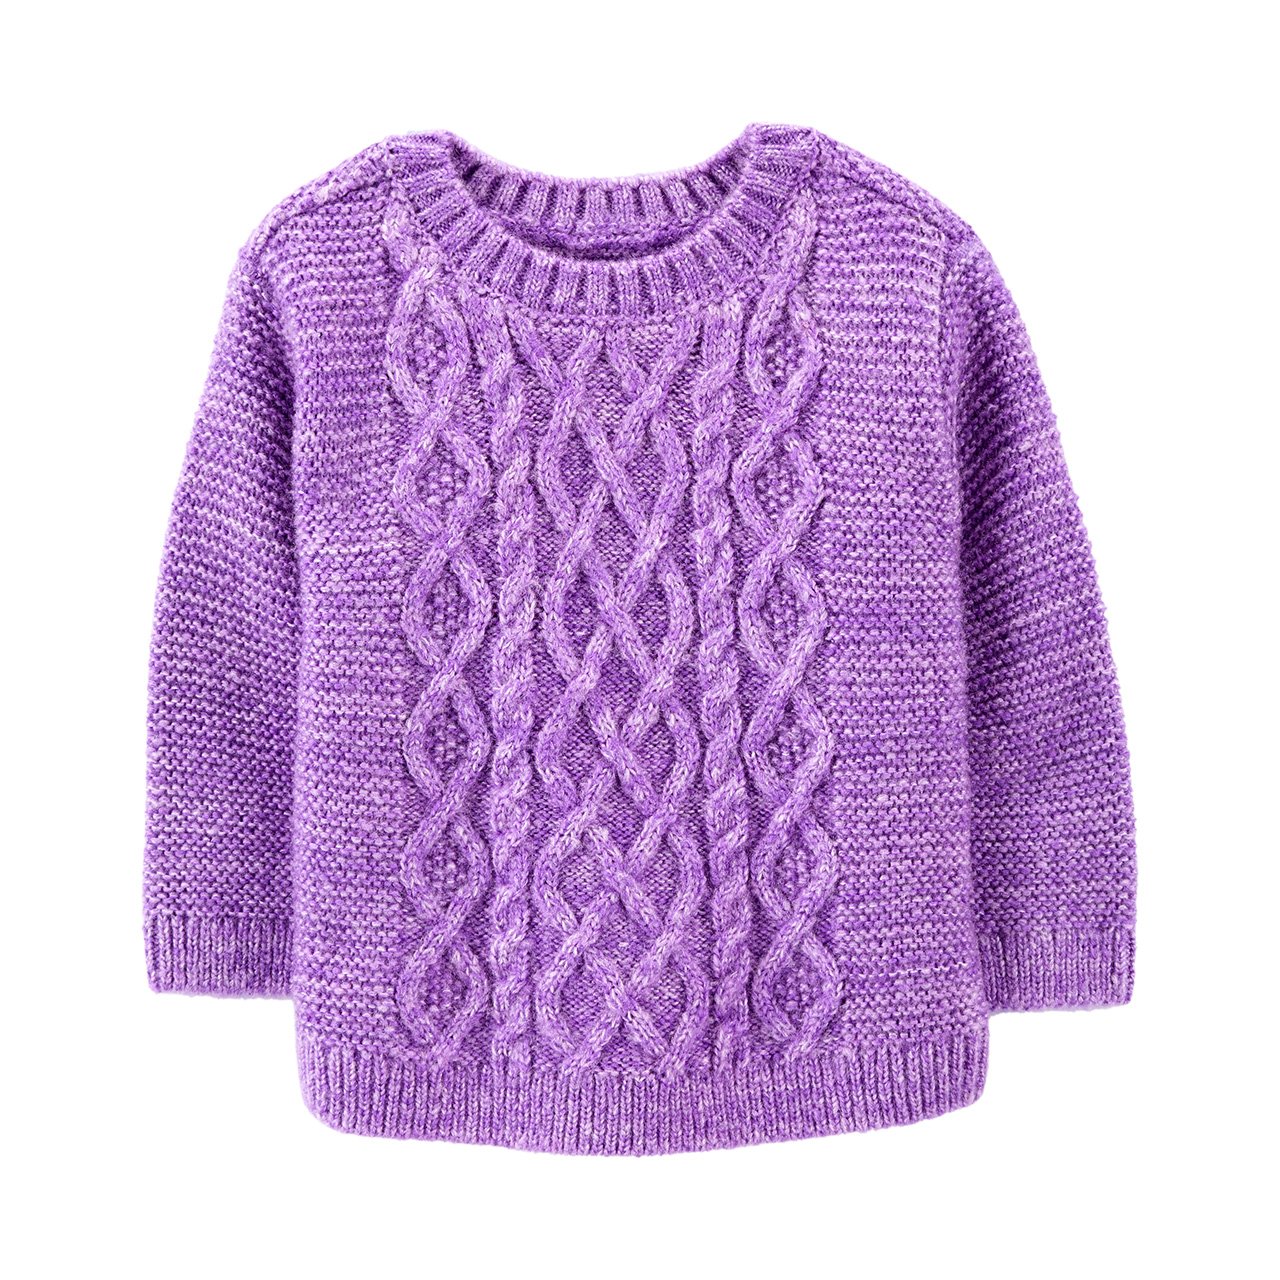 Un suéter de bebé de color violeta claro.